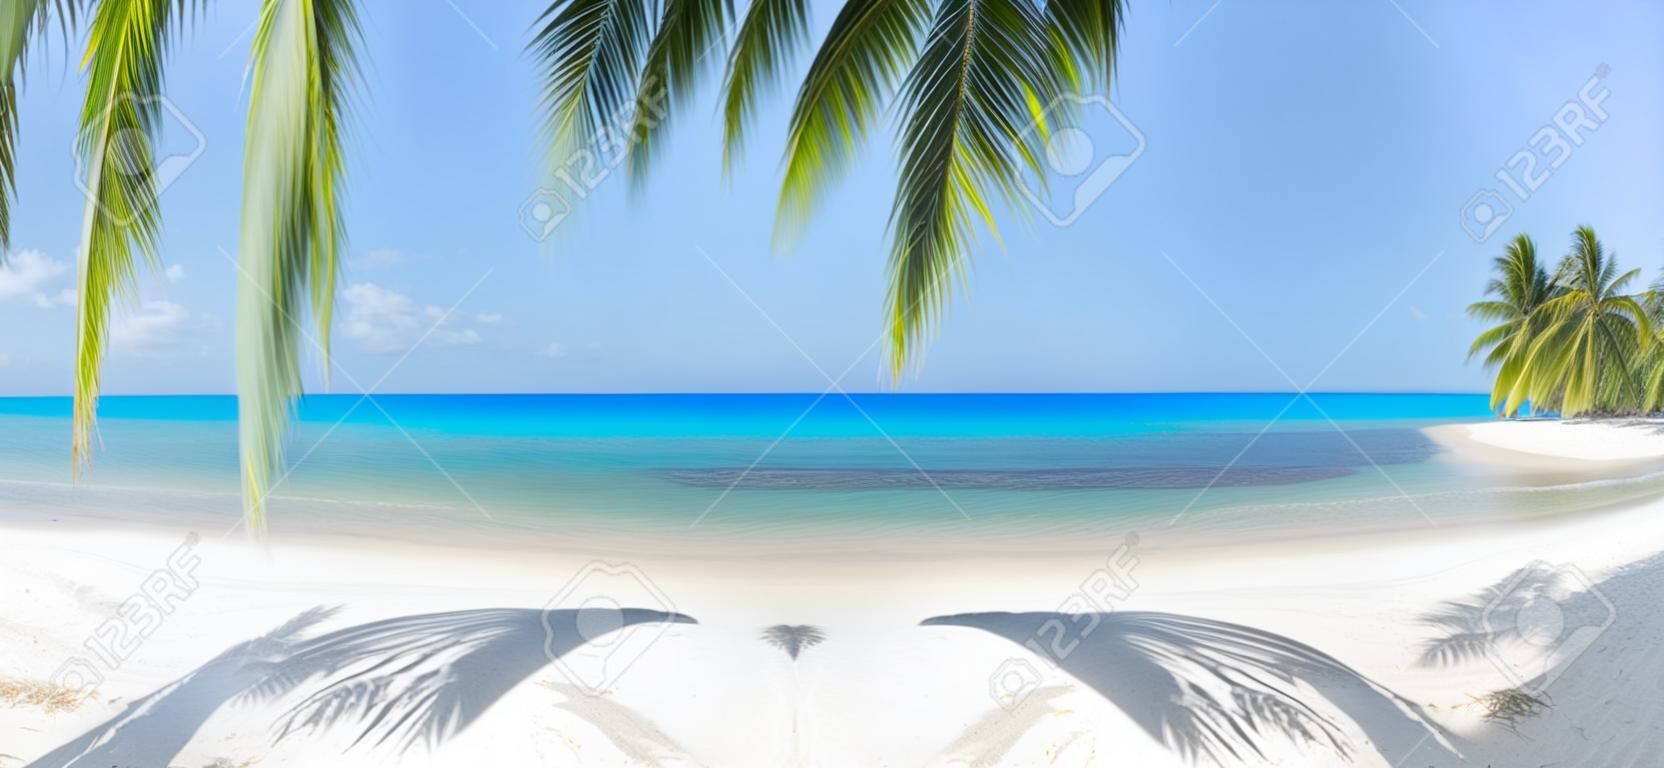 plage tropicale panoramique avec cocotier